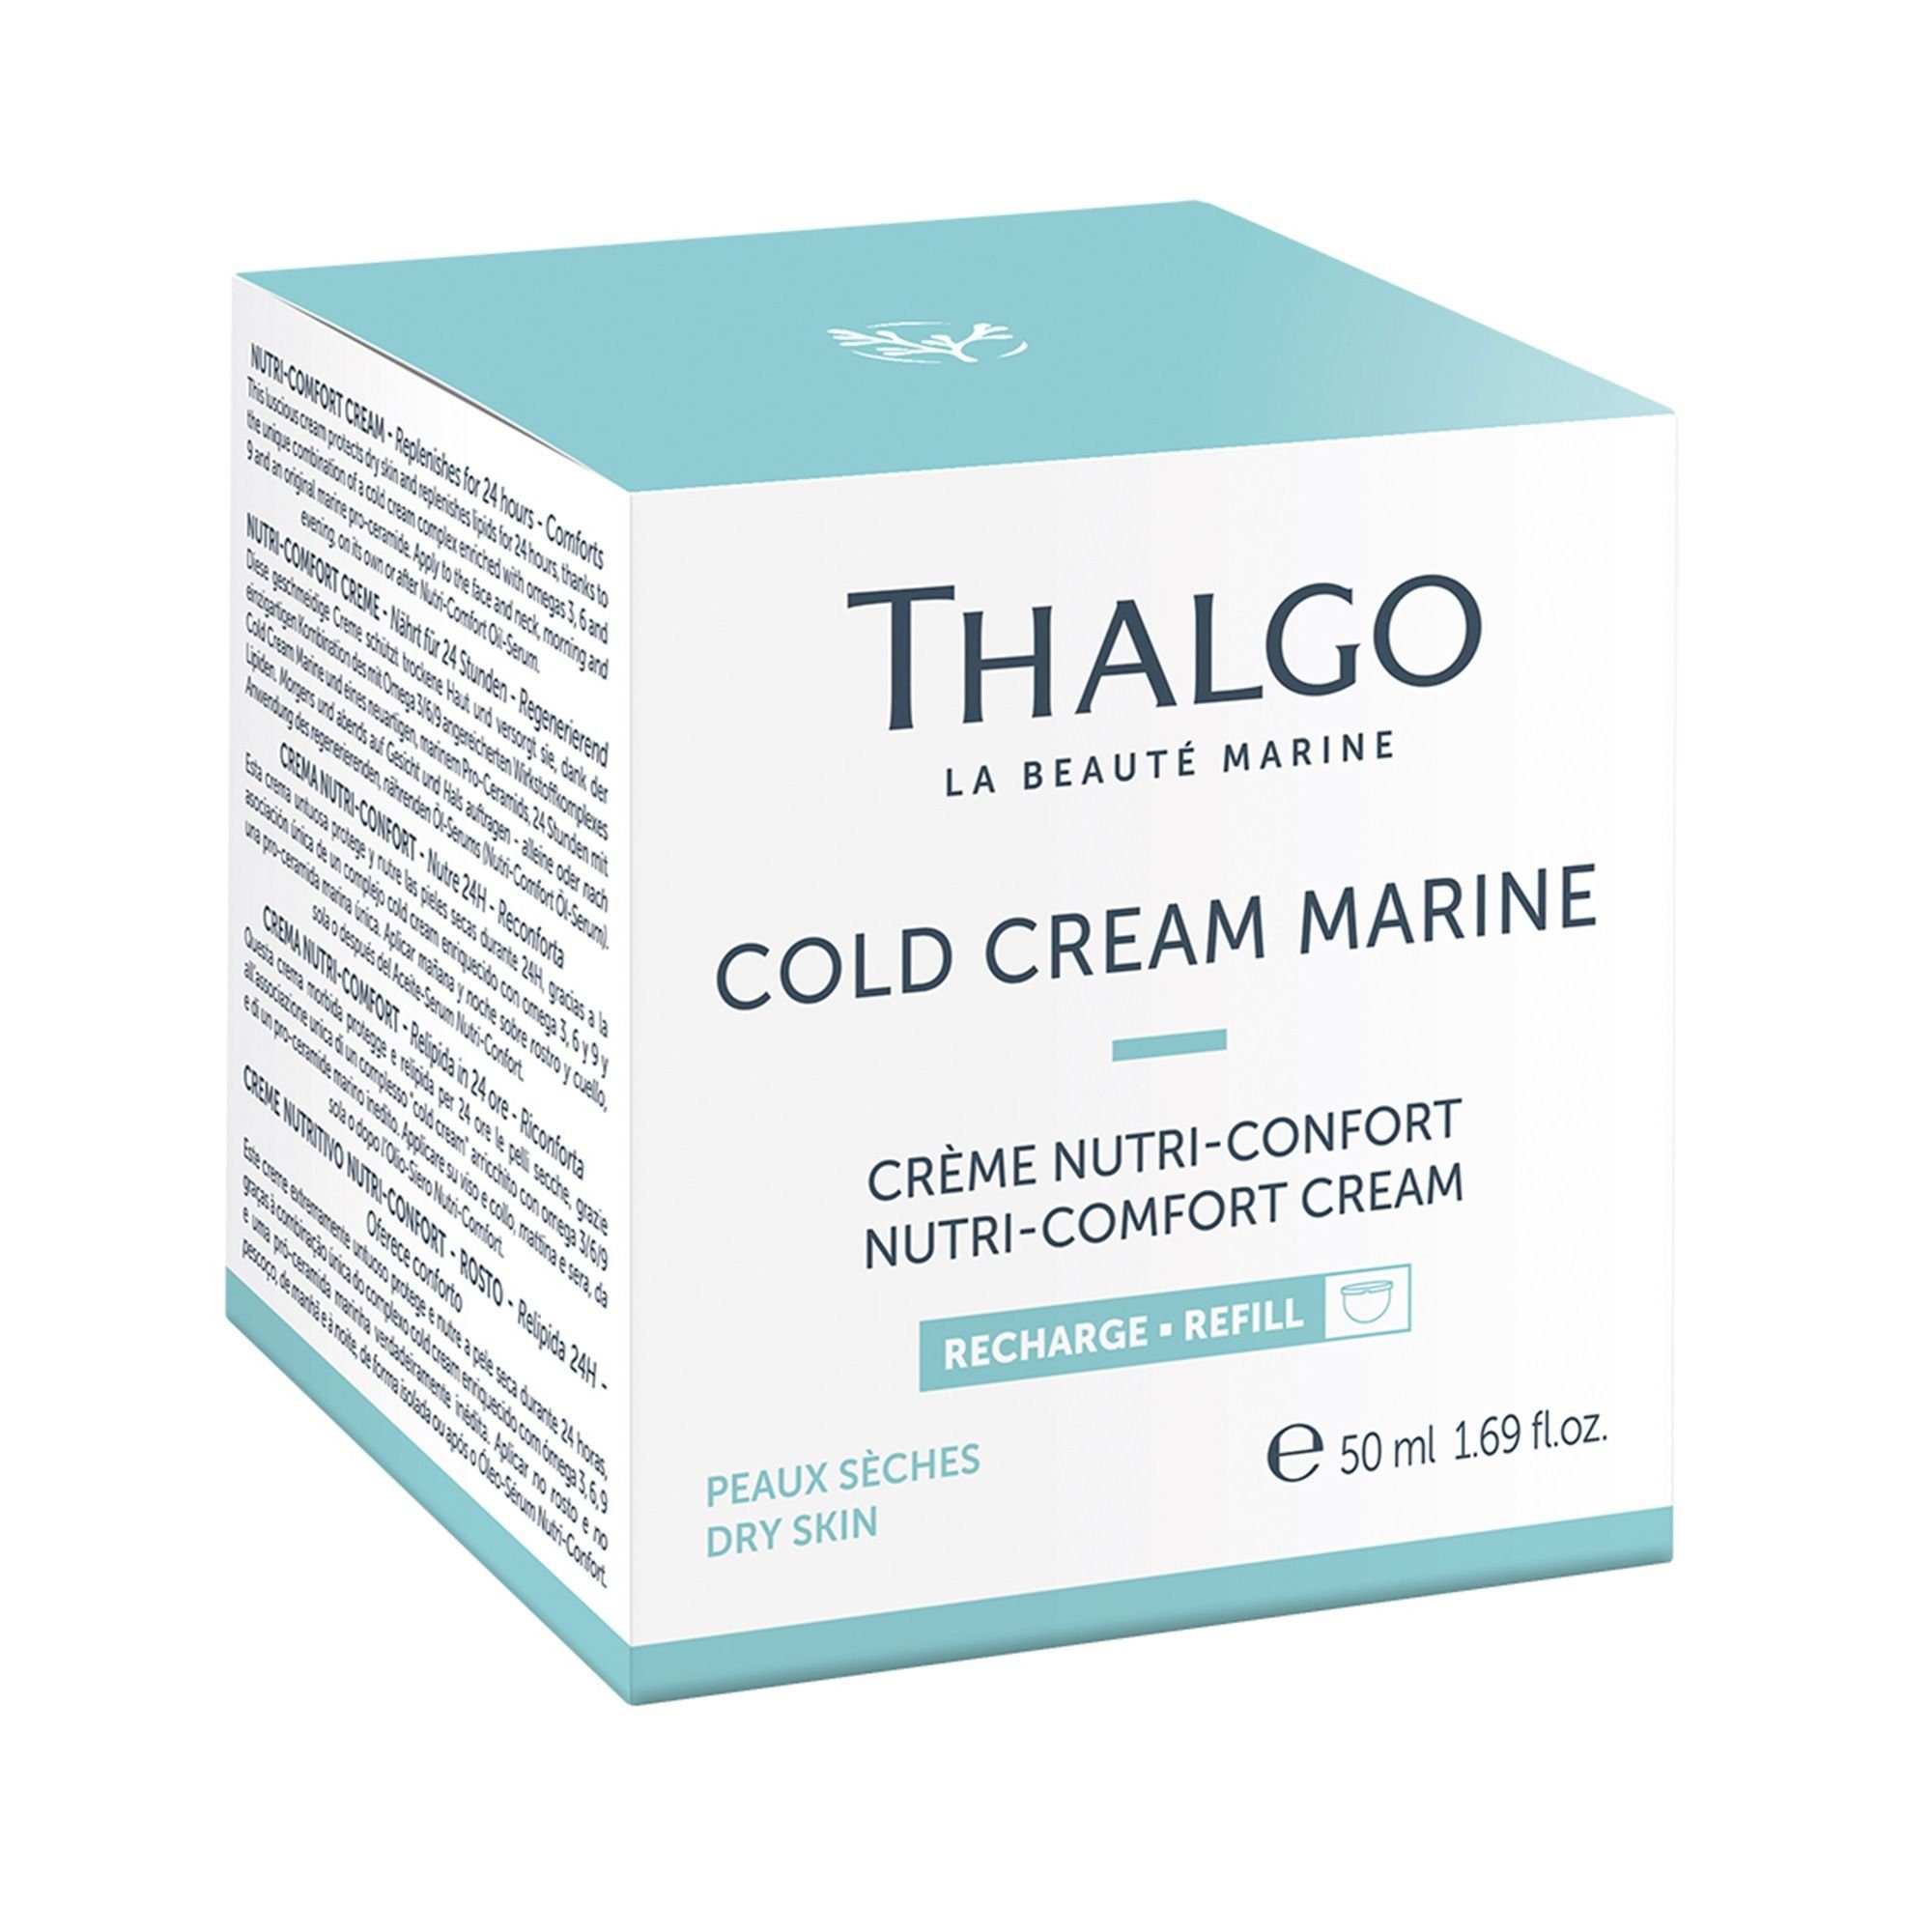 Nutri-Comfort-Creme, 50ml Schutz trockene Anti-Aging-Creme THALGO Refill für Sanfte Haut,